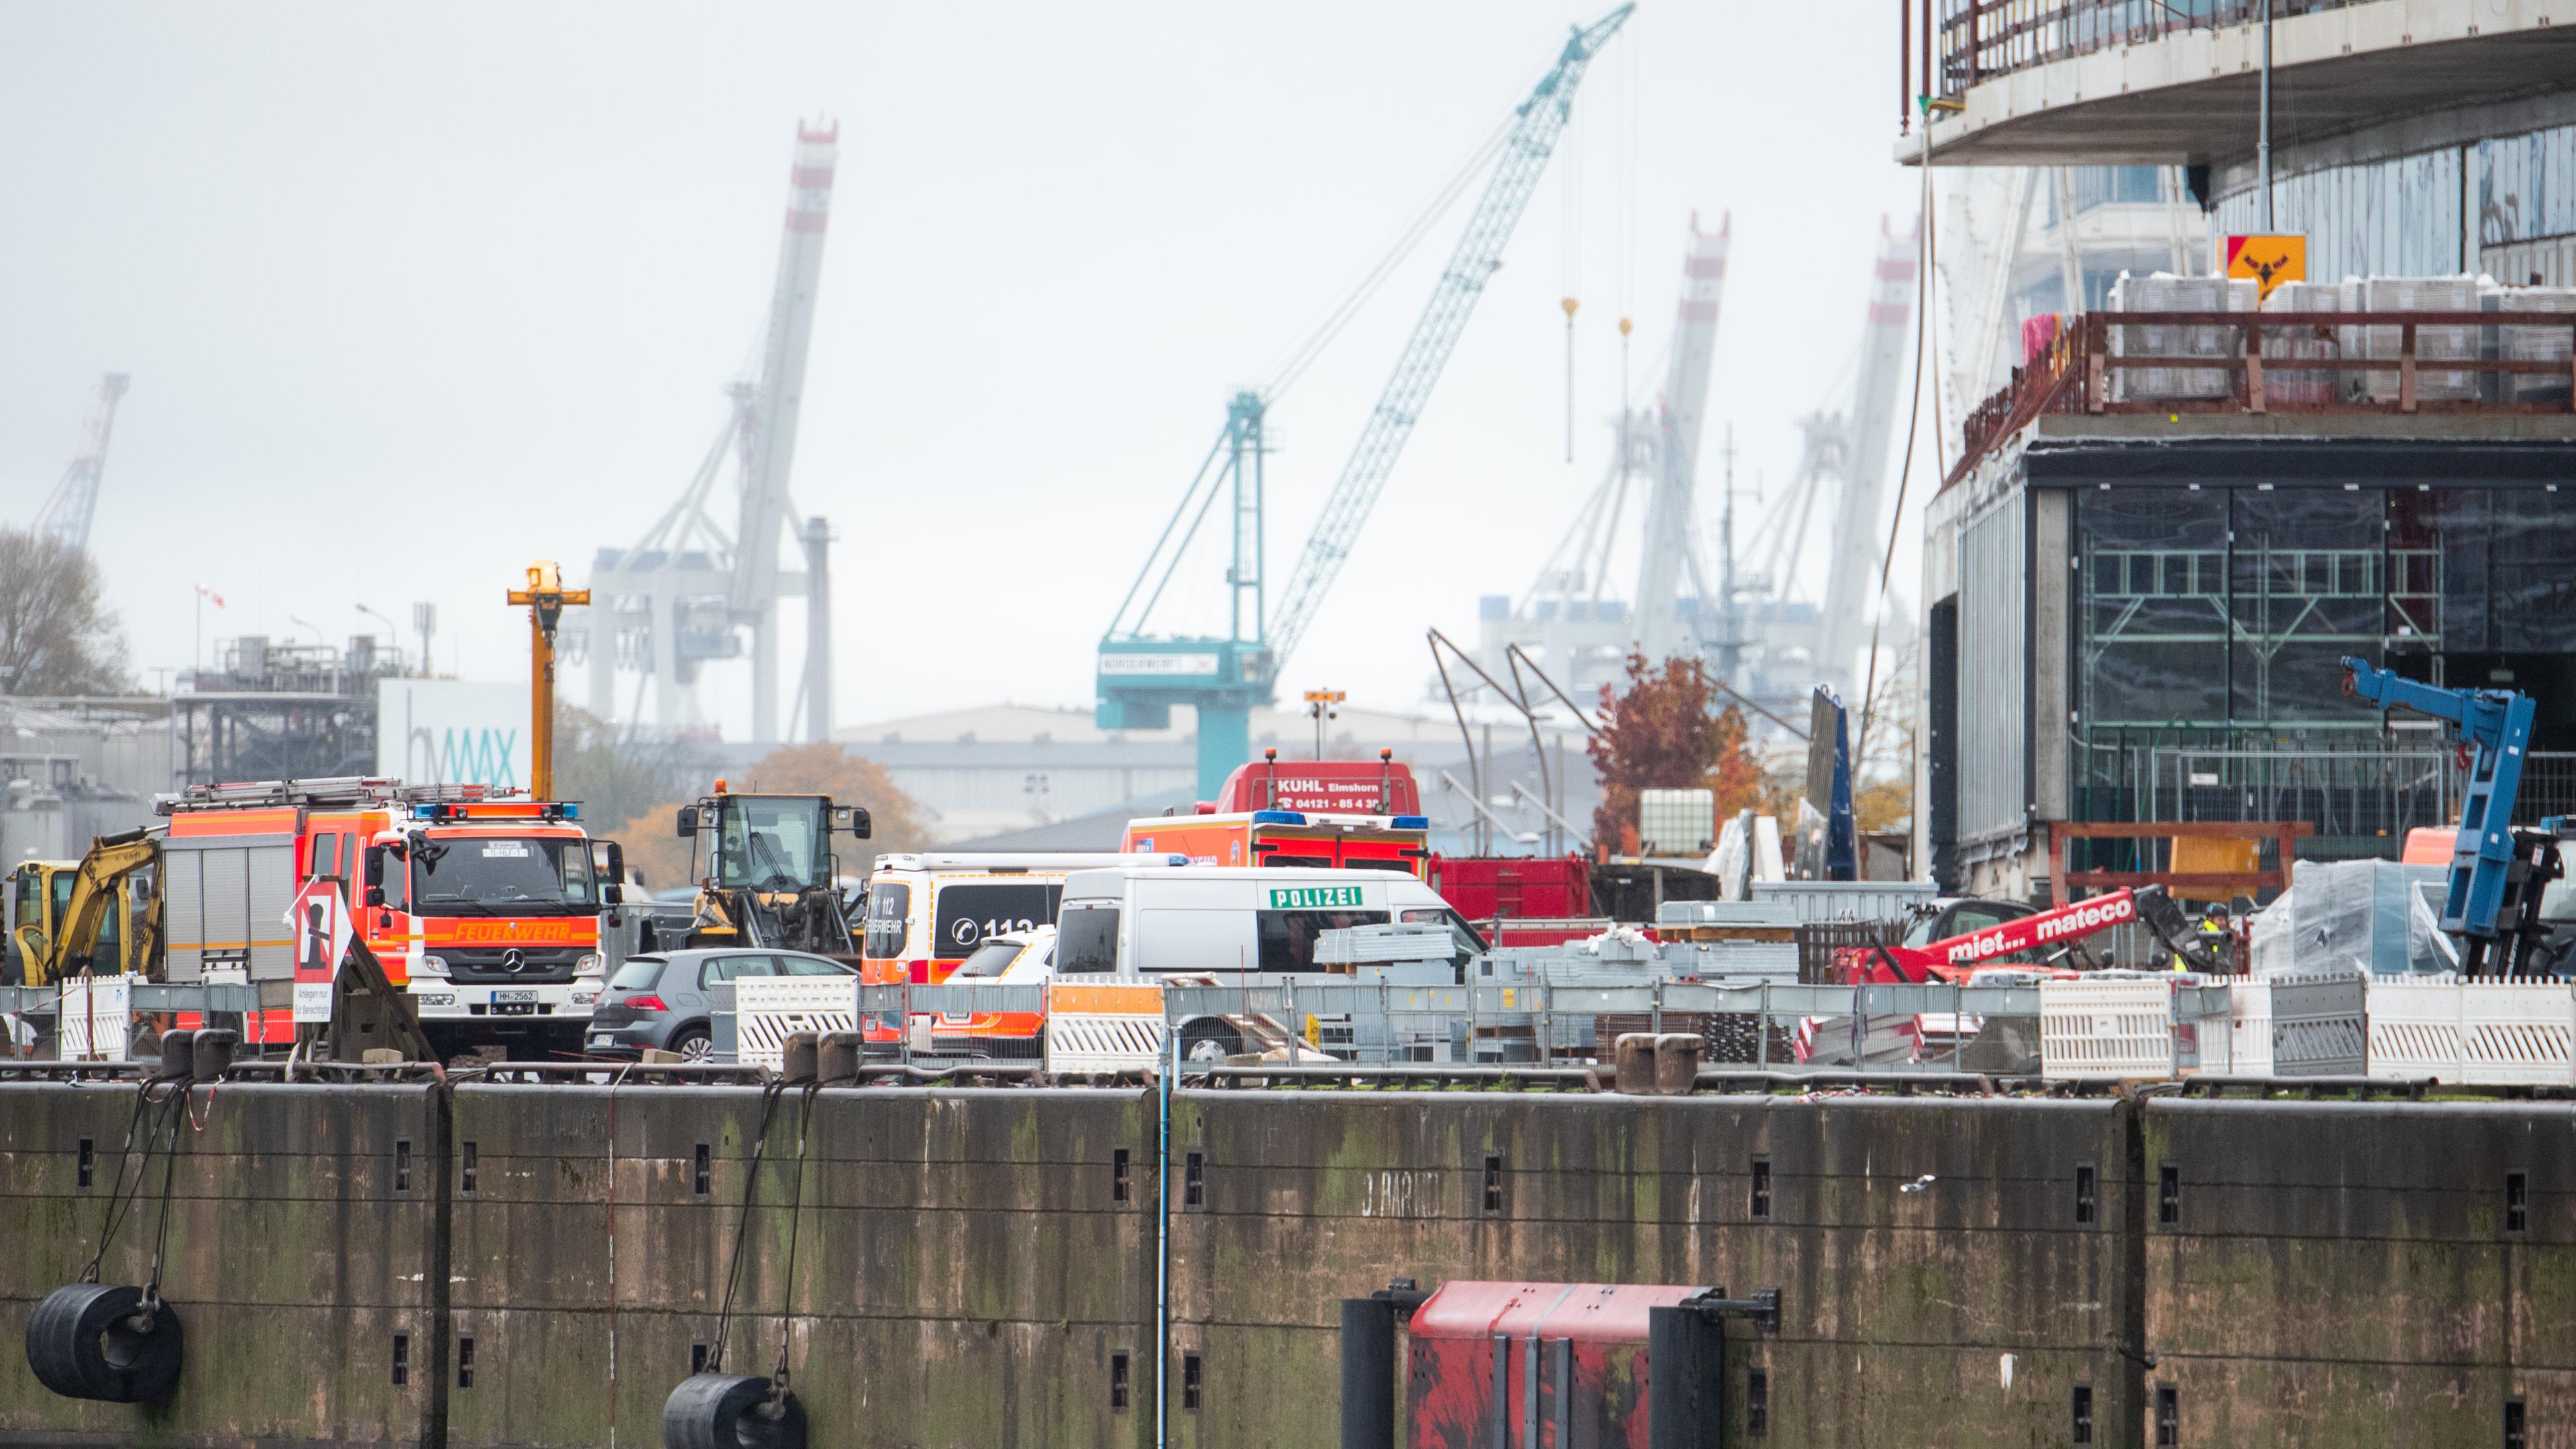 Einsatzkräfte am Unglücksort in der Hamburger Hafencity, wo es zu einem schweren Unfall auf einer Großbaustelle gekommen war.